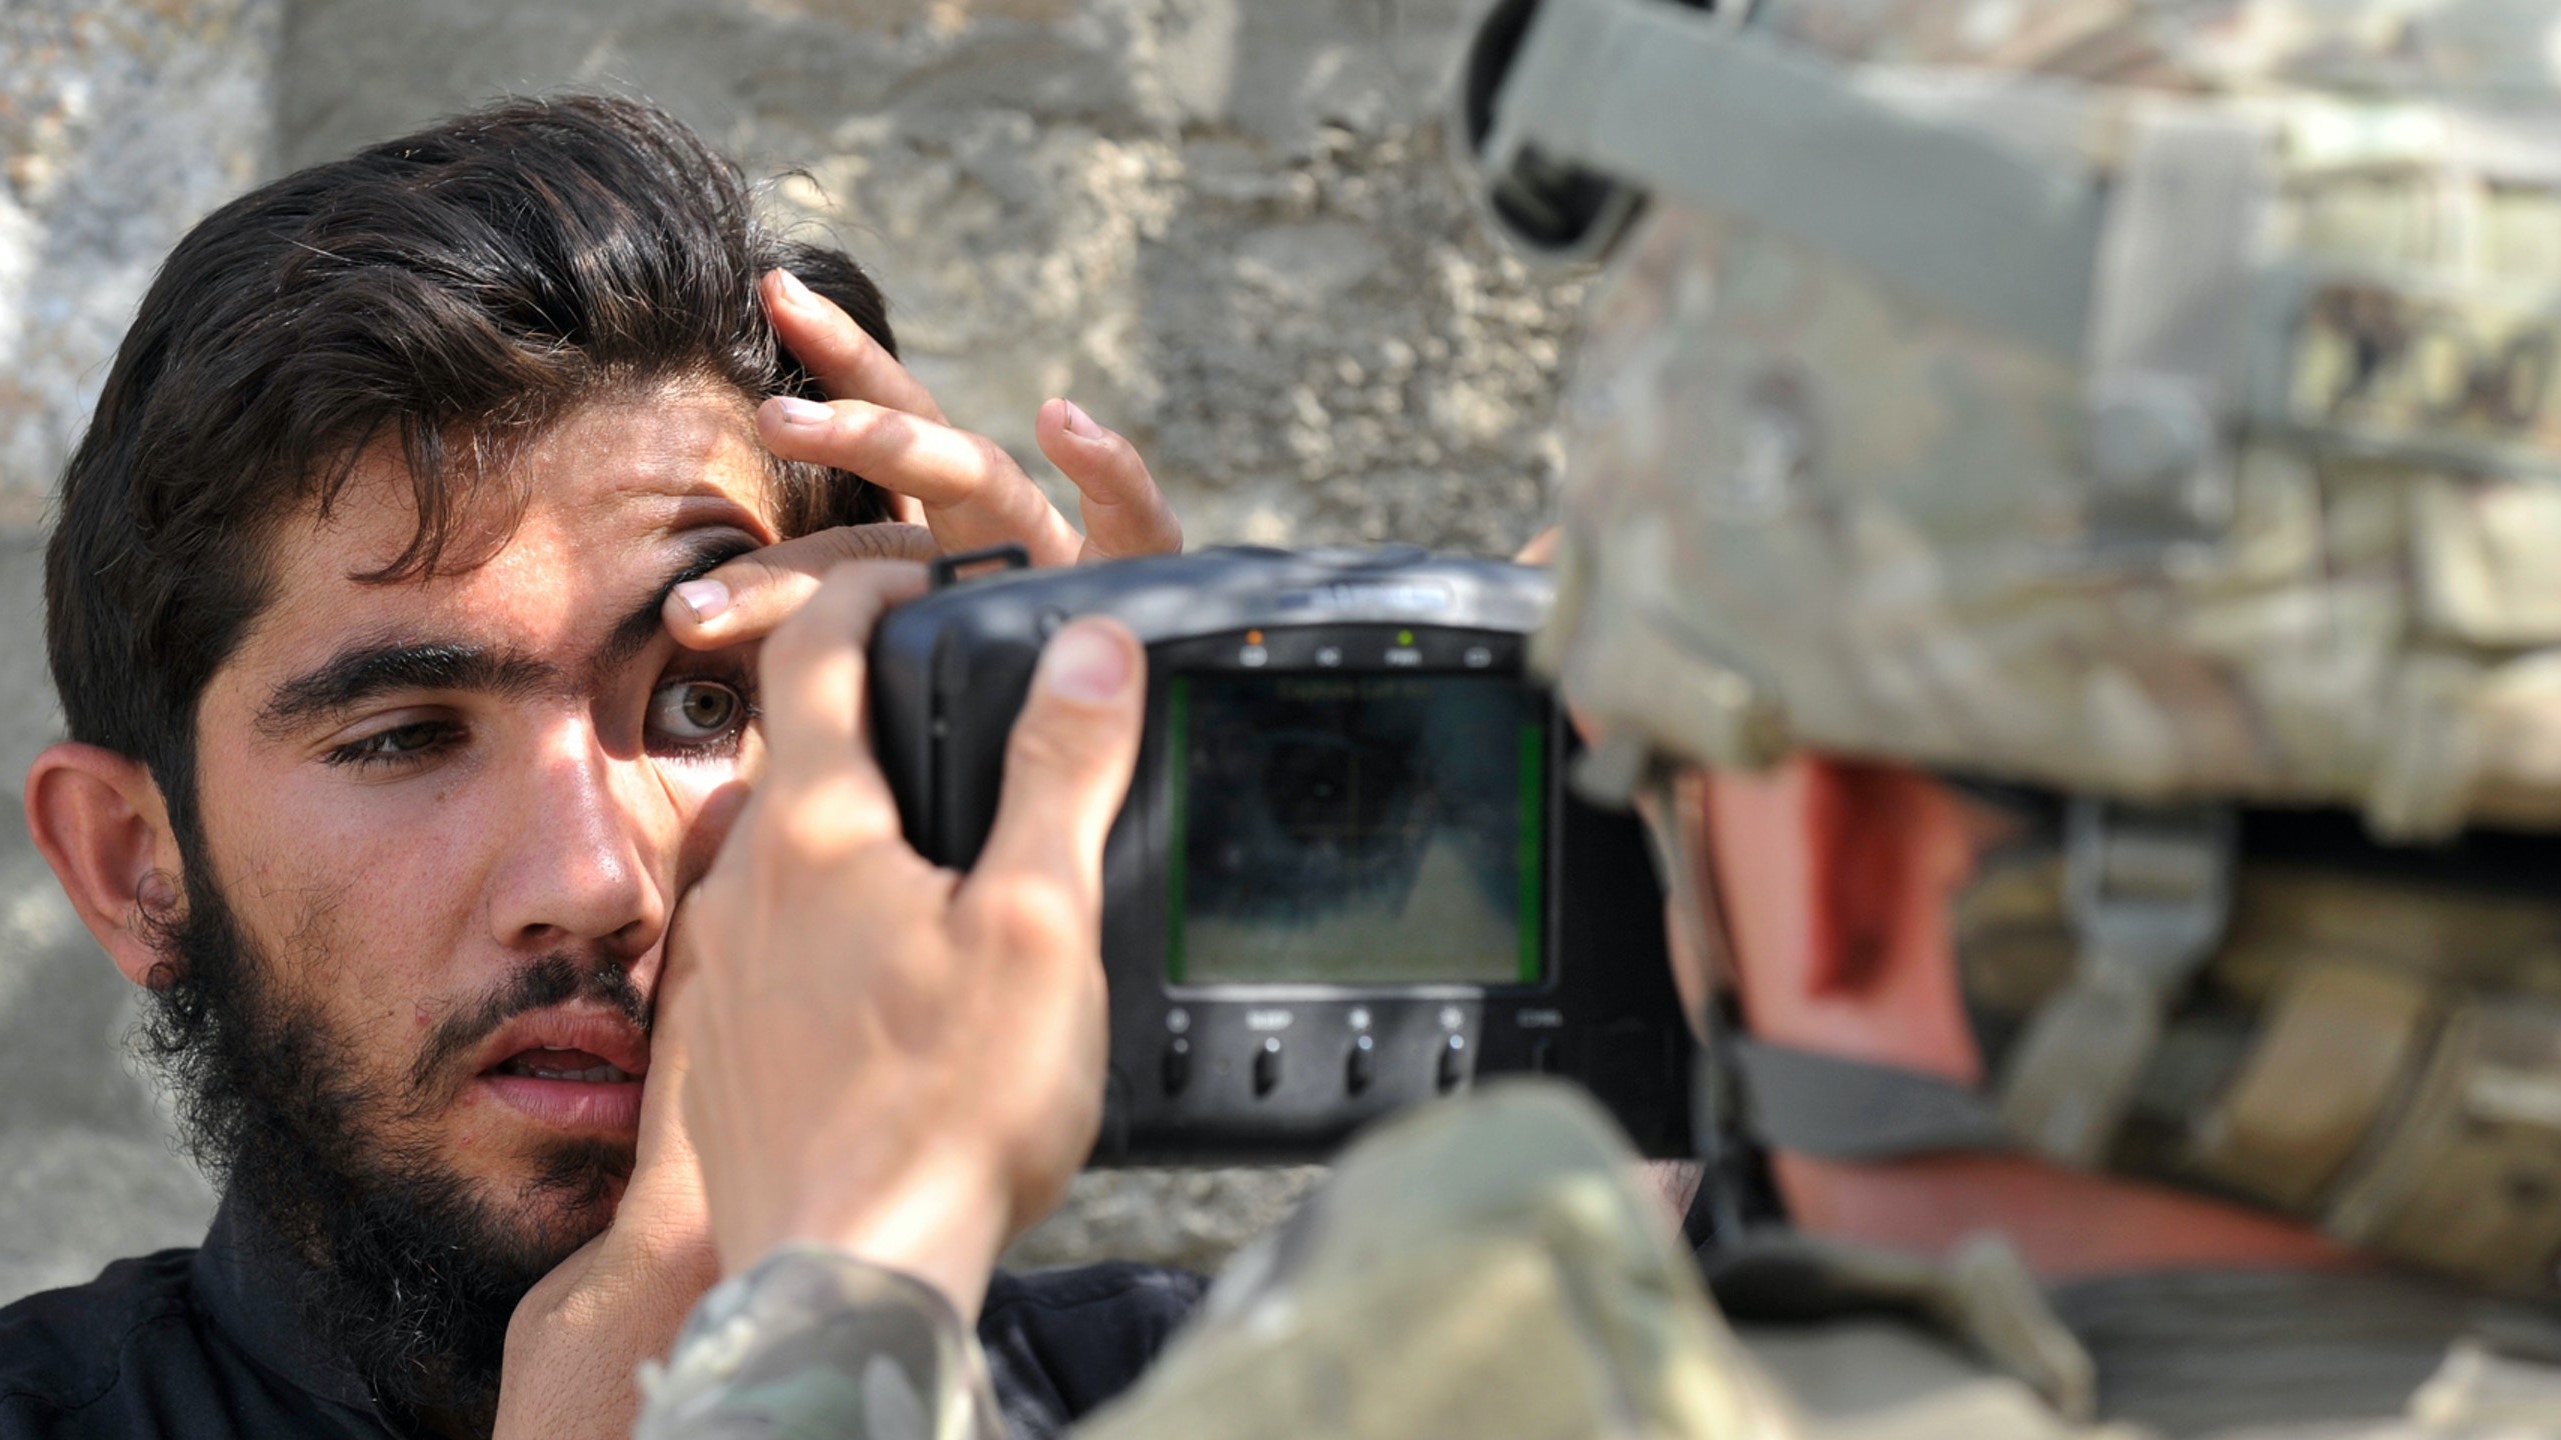 جندي أميركي يمسح بصمة عين مواطن أفغاني باستخدام نظام التعرف البيومتري الآلي خلال مهمة في تورخام في أفغانستان في 6 أكتوبر2011